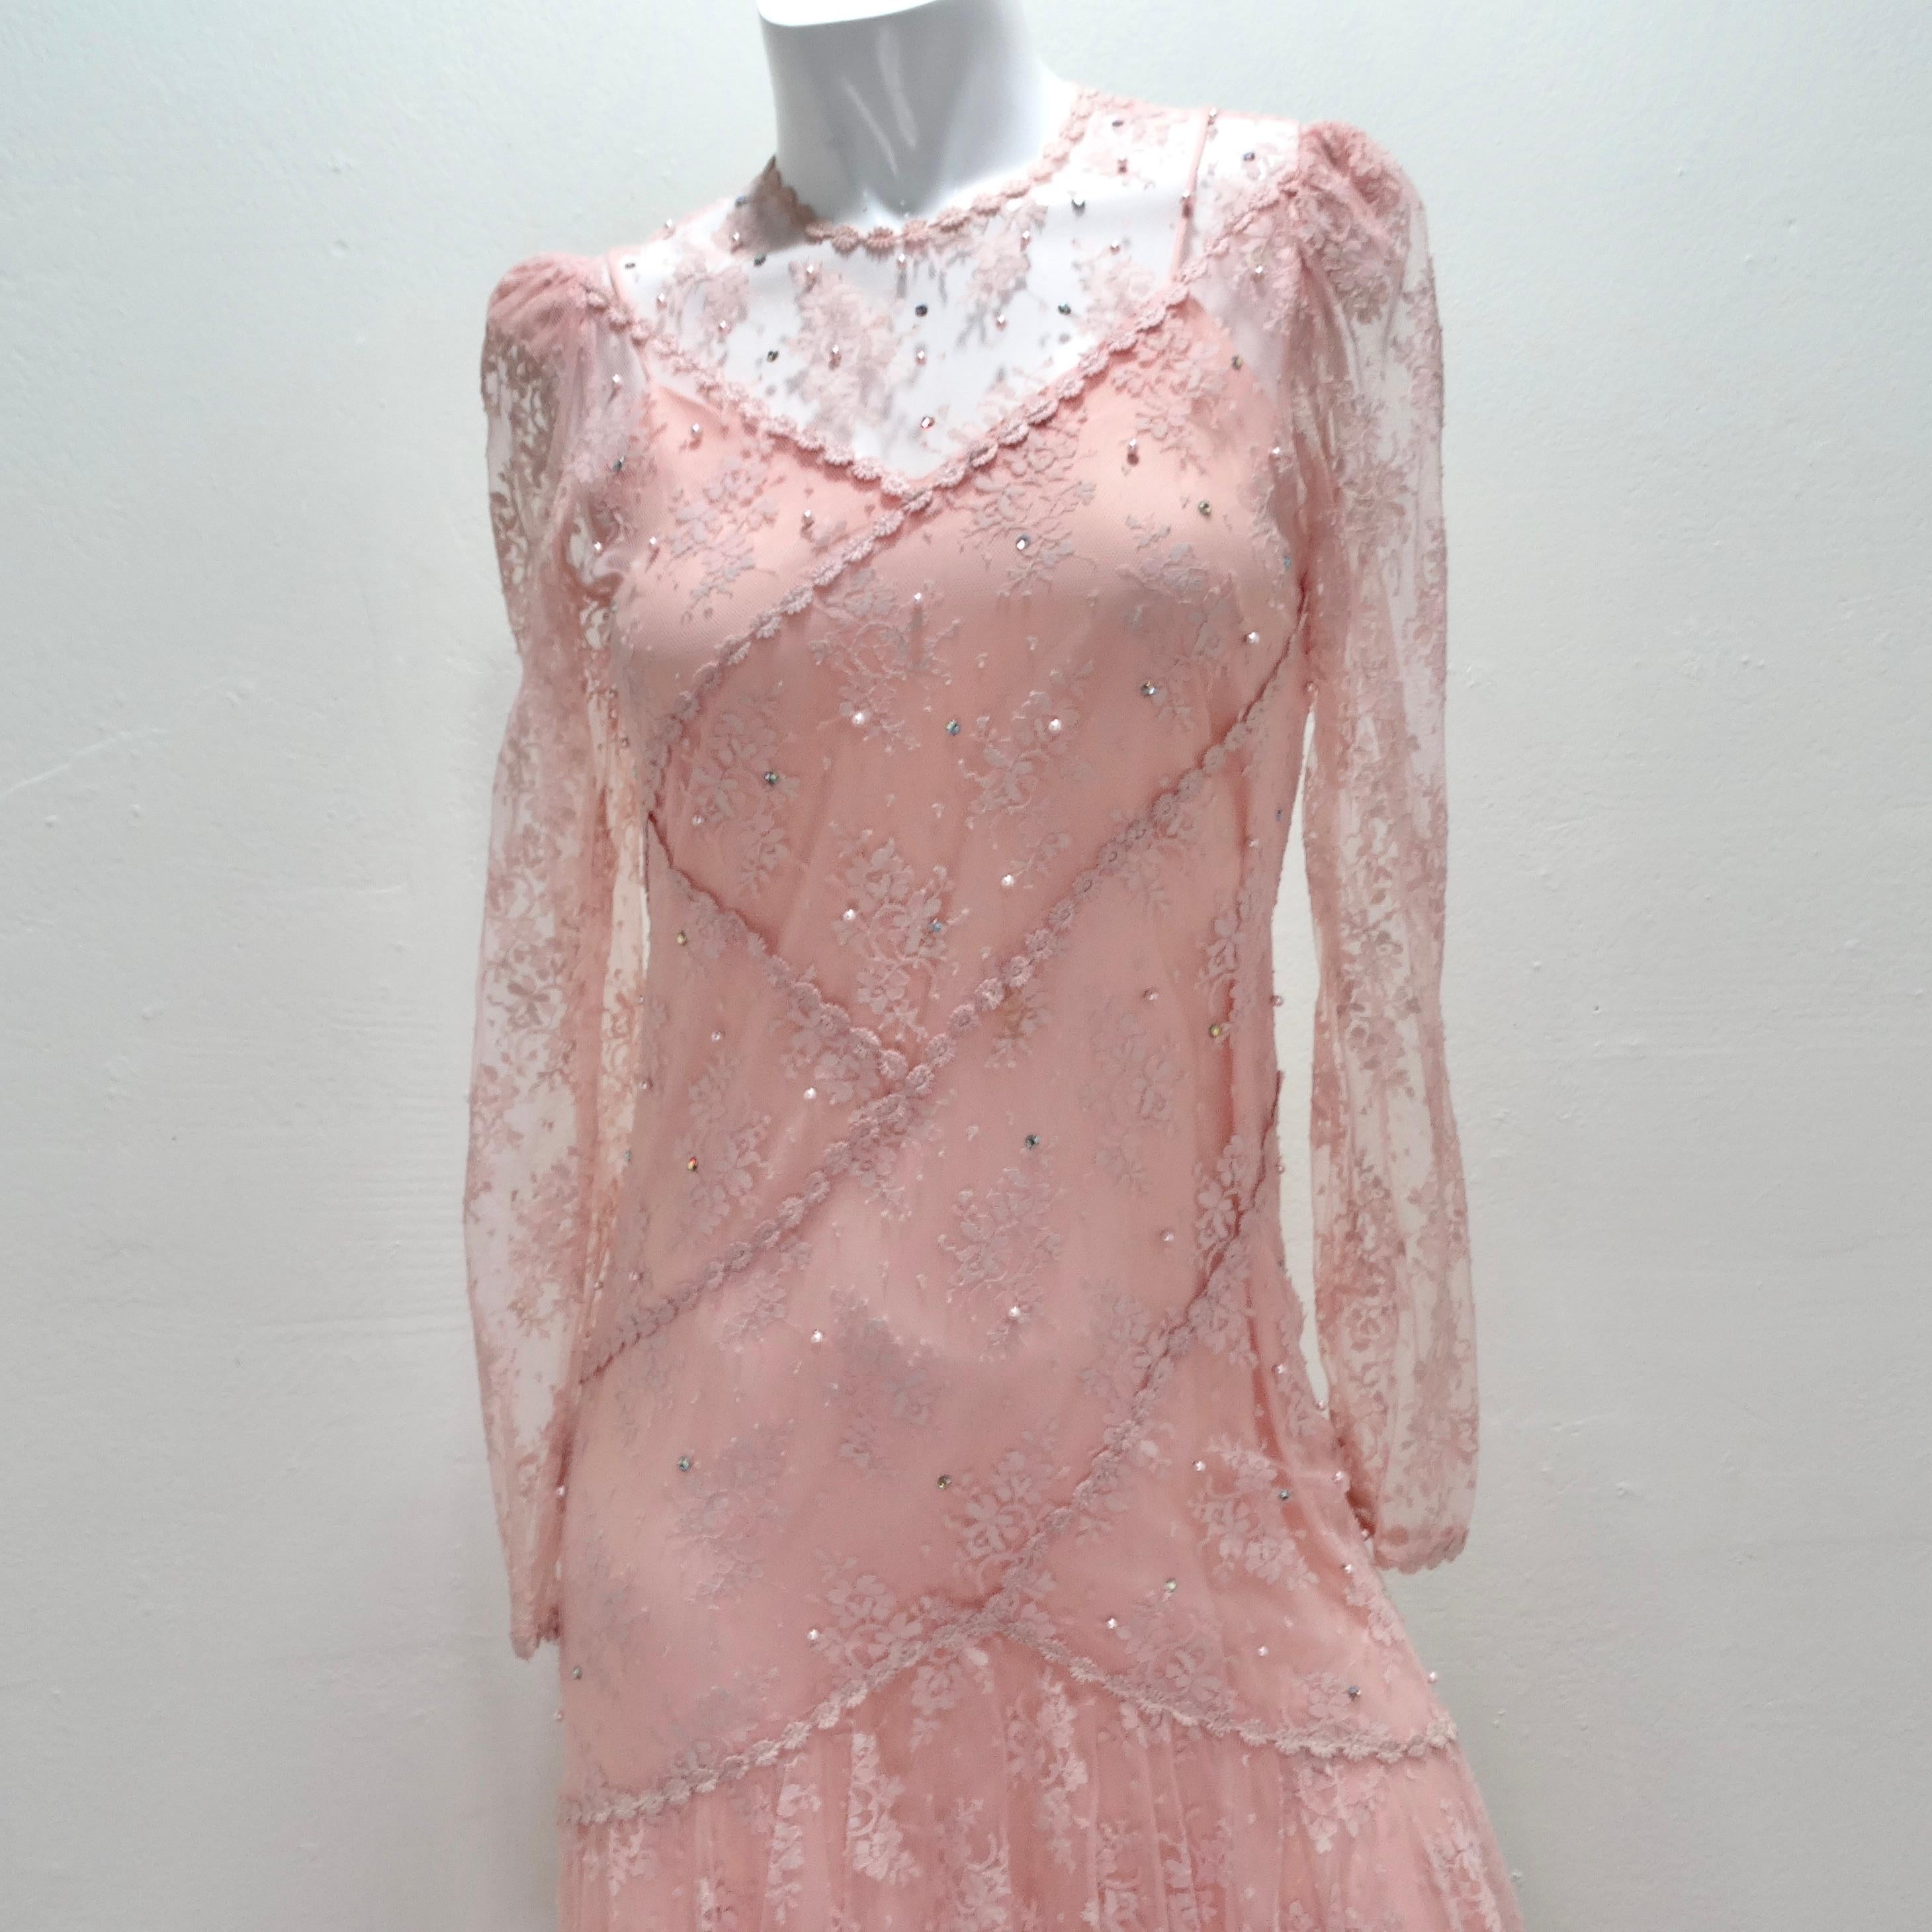 Steigen Sie in eine Zeitmaschine und lassen Sie sich von den fabelhaften 1980er Jahren inspirieren - mit unserem Pink Lace Layered Slip & Long Sleeve Dress. Dieses Vintage-inspirierte Ensemble fängt die Essenz dieser Ära ein und bietet einen